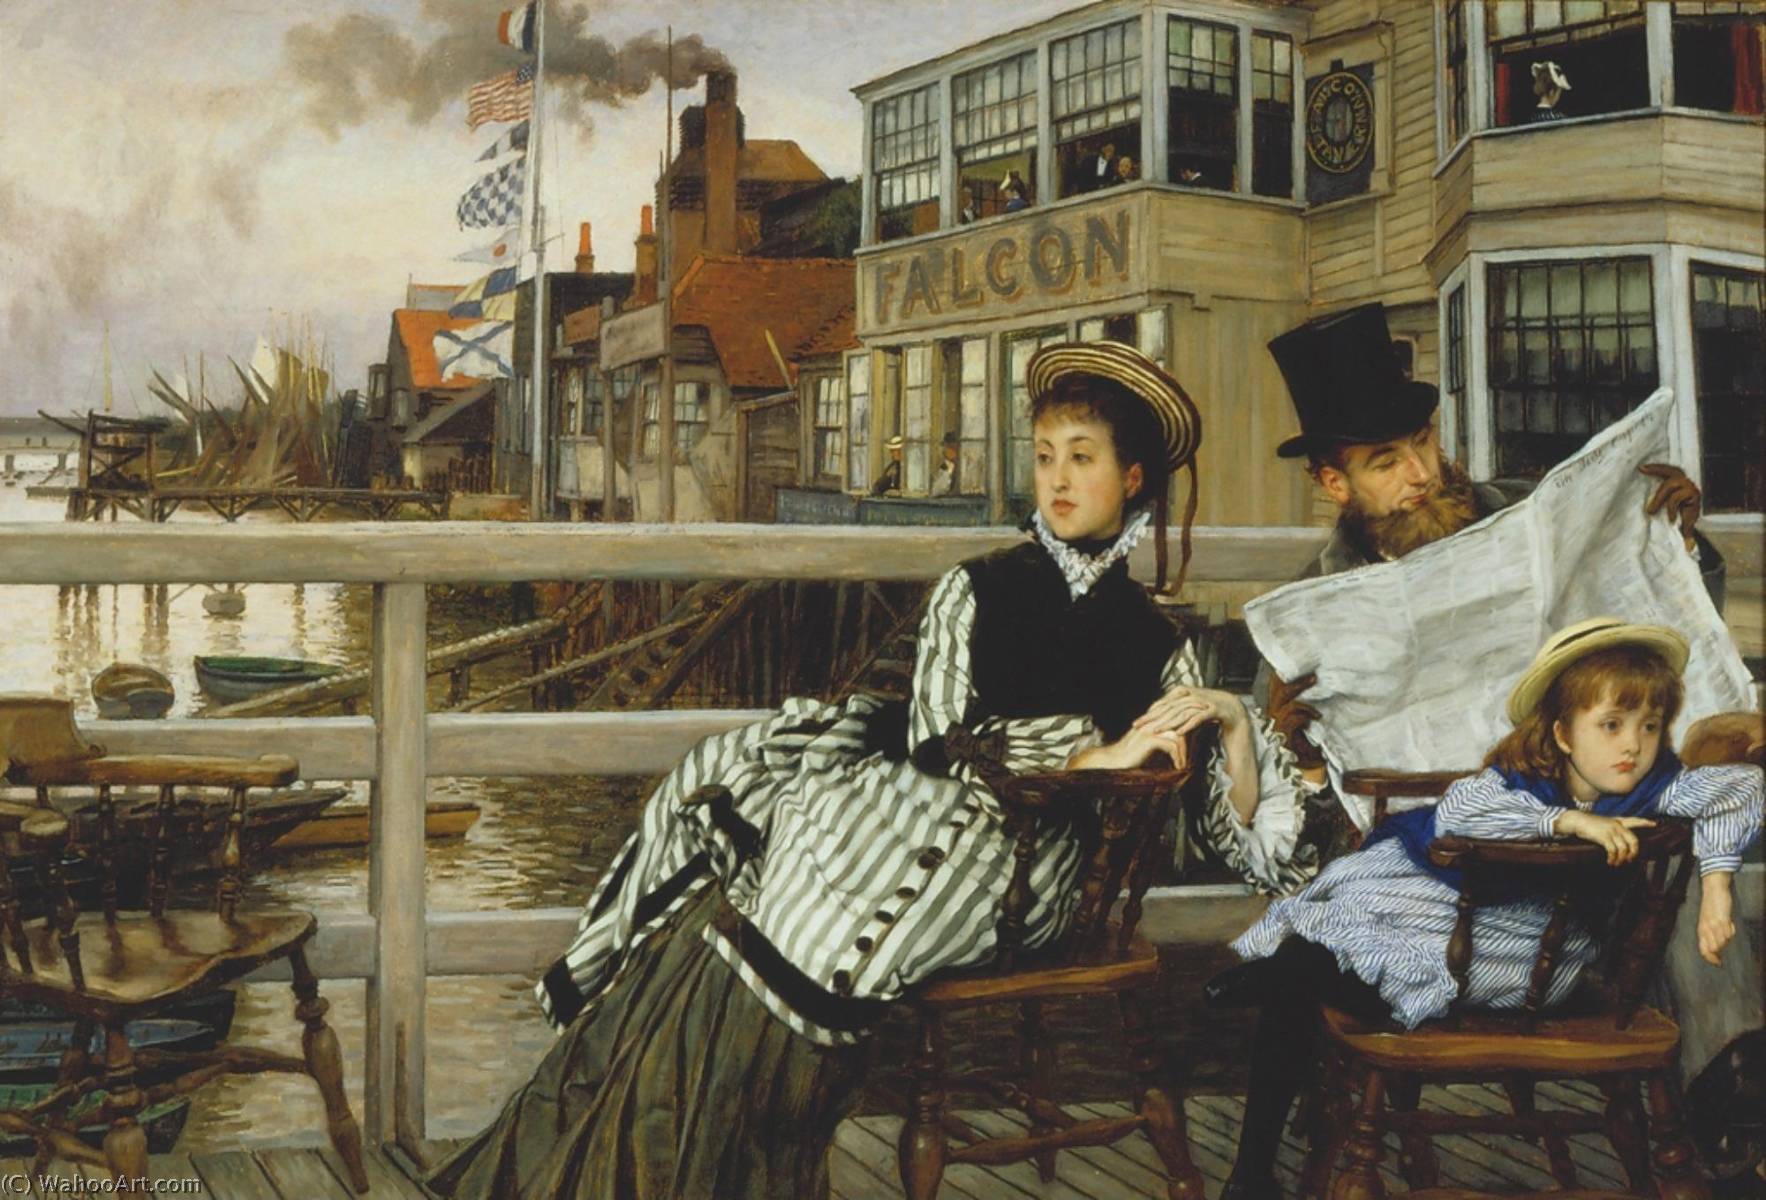 WikiOO.org - Енциклопедия за изящни изкуства - Живопис, Произведения на изкуството James Jaques Joseph Tissot - Waiting for the Ferry at the Falcon Tavern